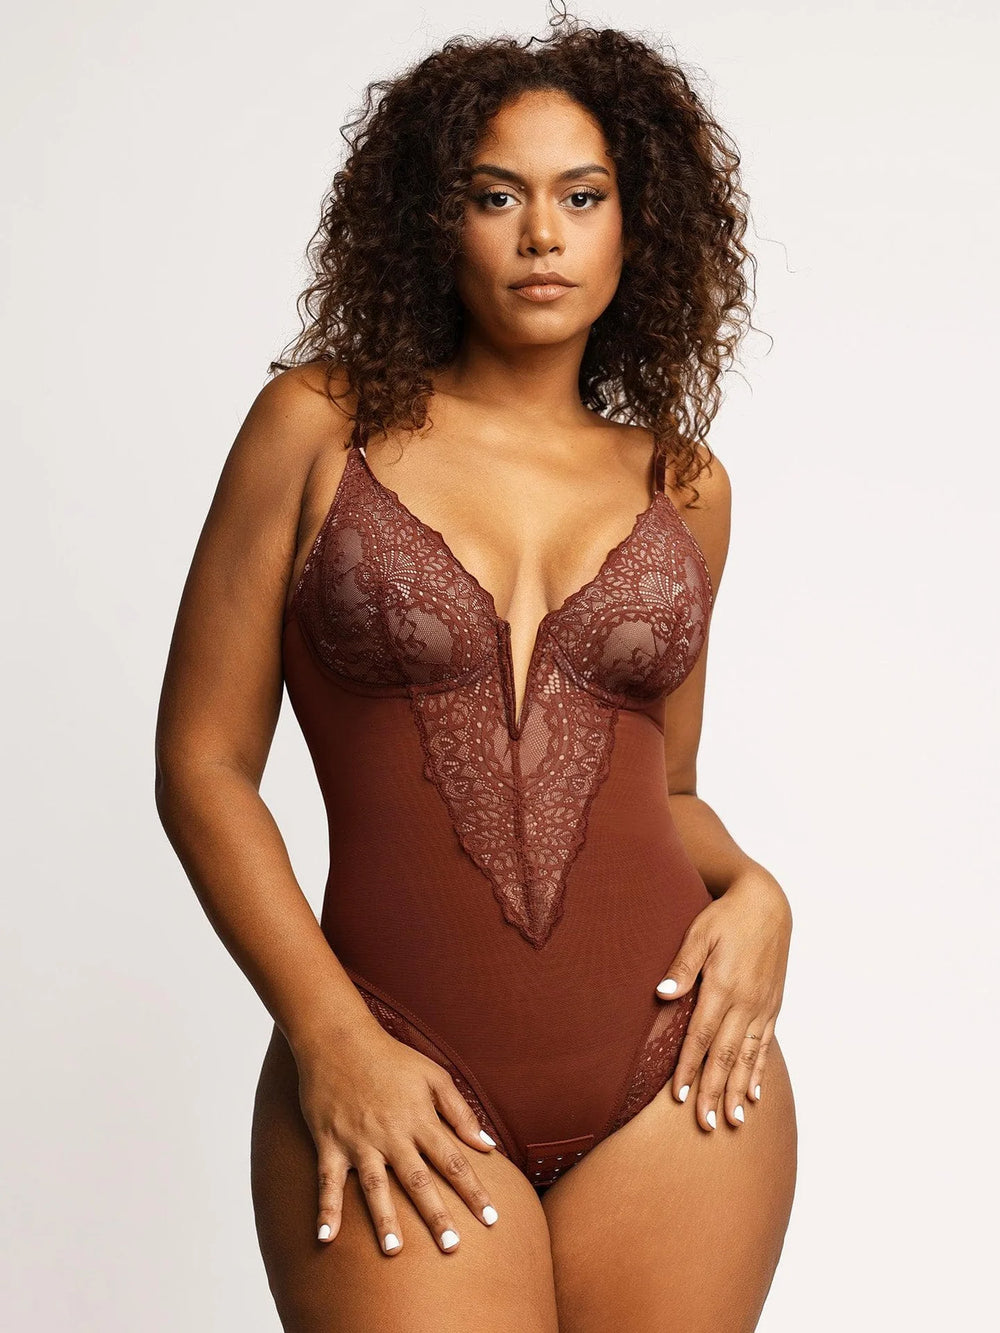 Shop Generic S-3XL Plus Size Bodysuit Women Sexy Lingerie Tight V